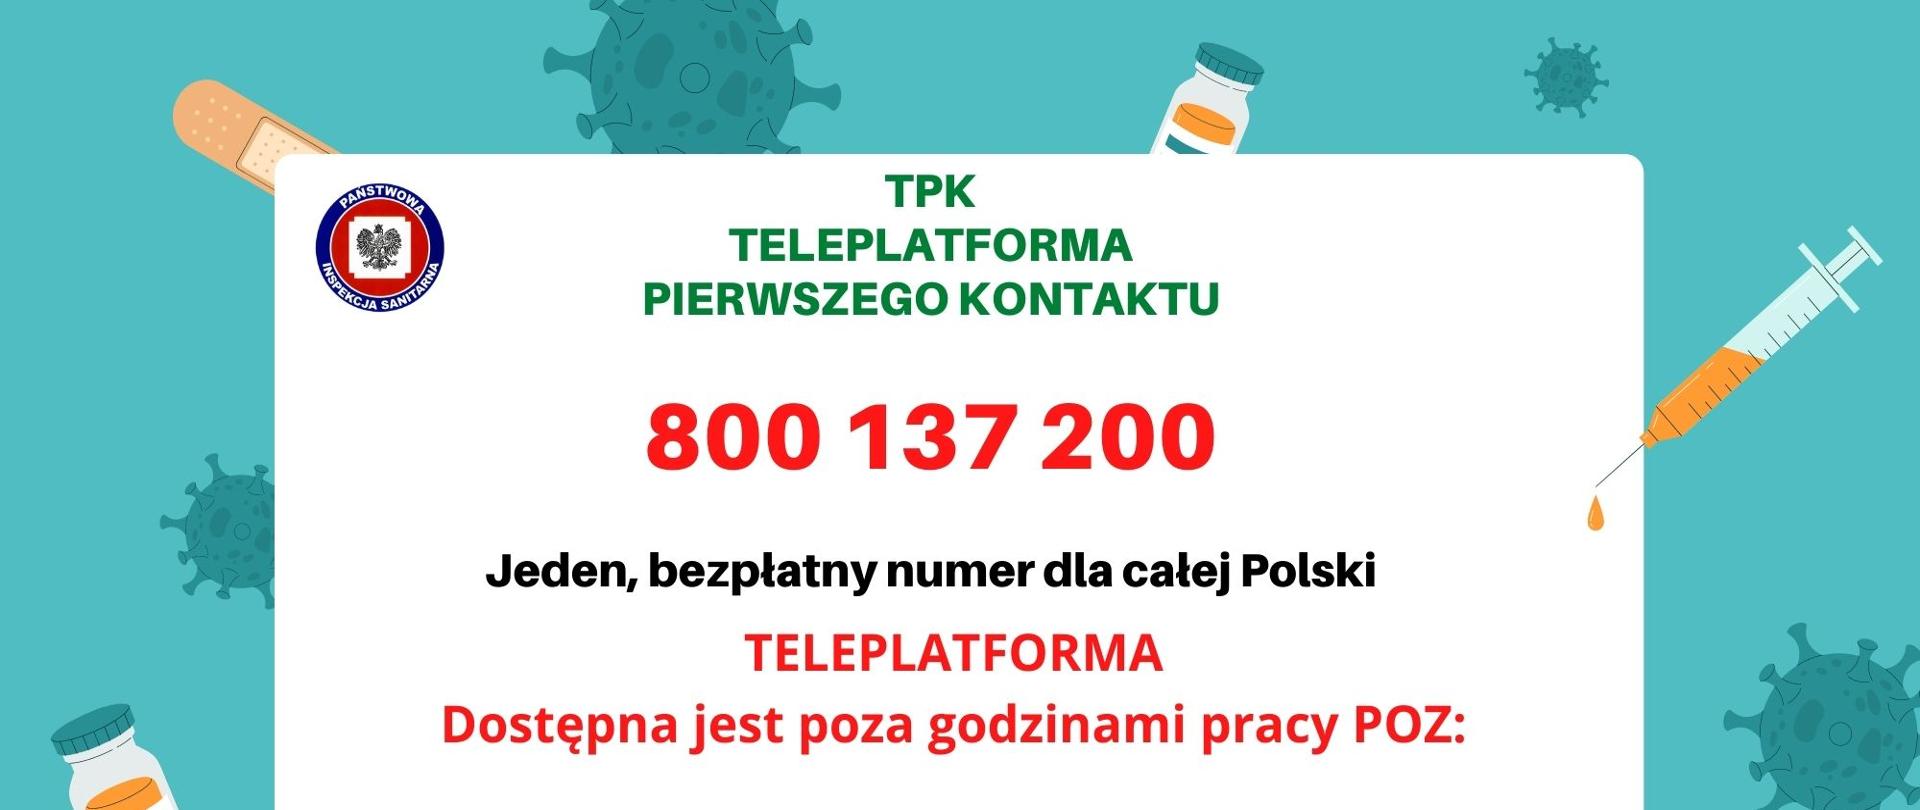 Plansza przedstawiające numer kontaktowy TPK